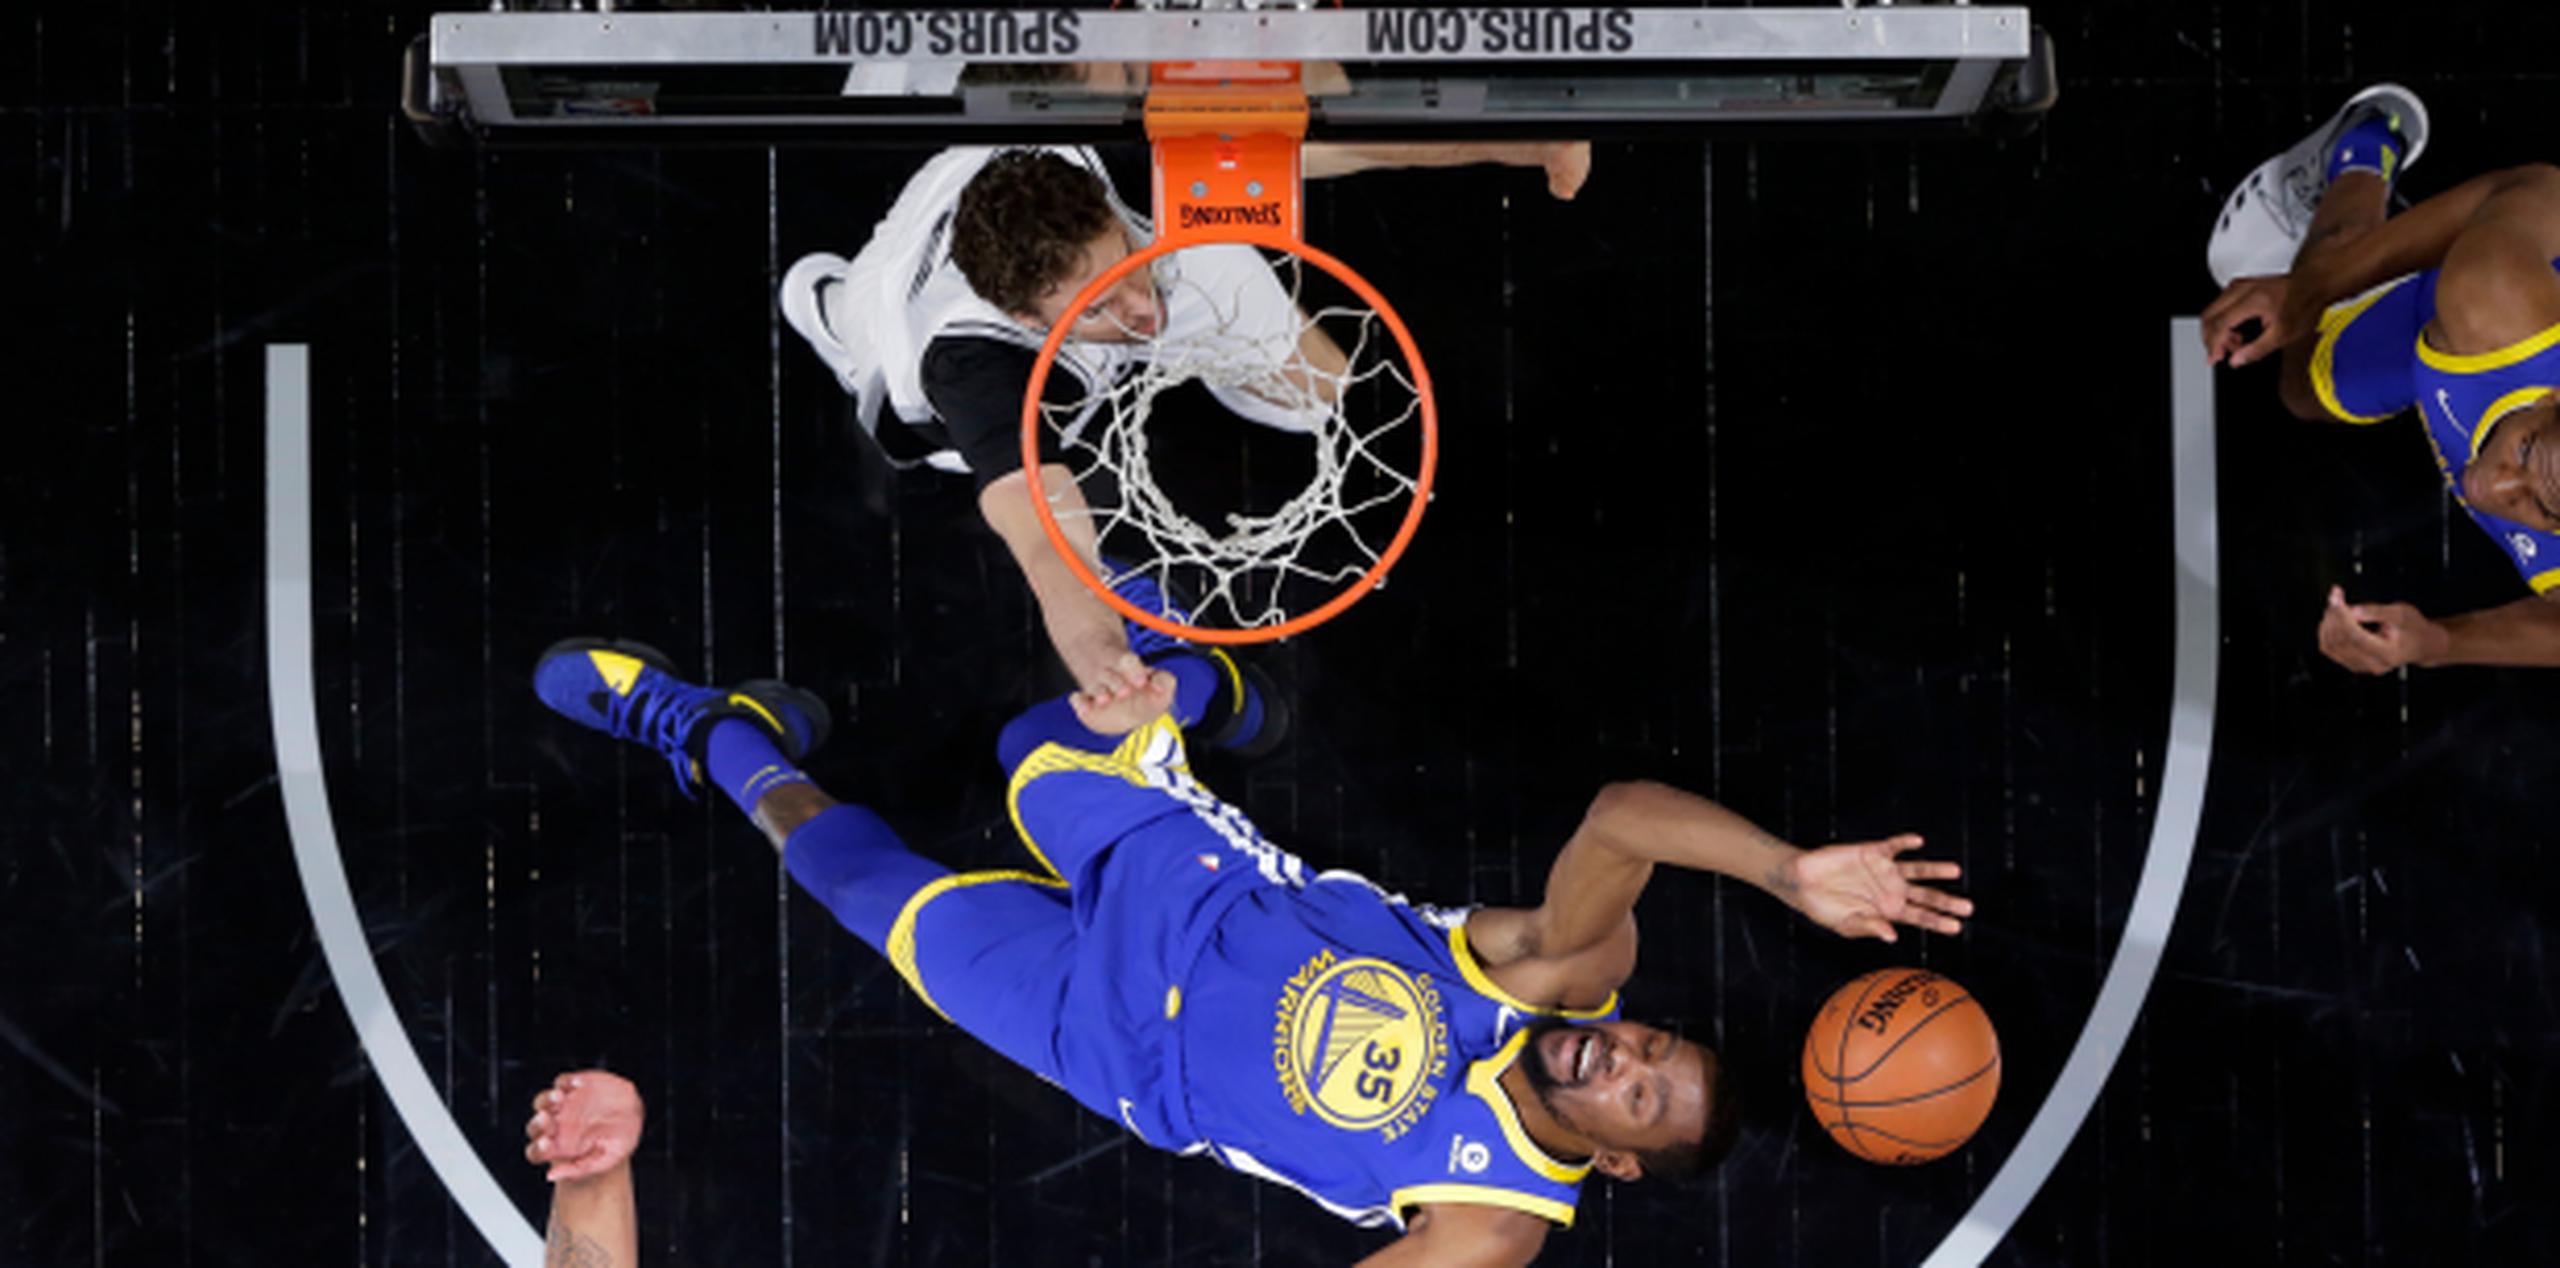 Kevin Durant contabilizó 26 puntos, nueve rebotes y seis asistencias y los Warriors doblegaron 110-97 a San Antonio para lograr una ventaja de 3-0 en la primera ronda de los playoffs de la NBA. (AP)